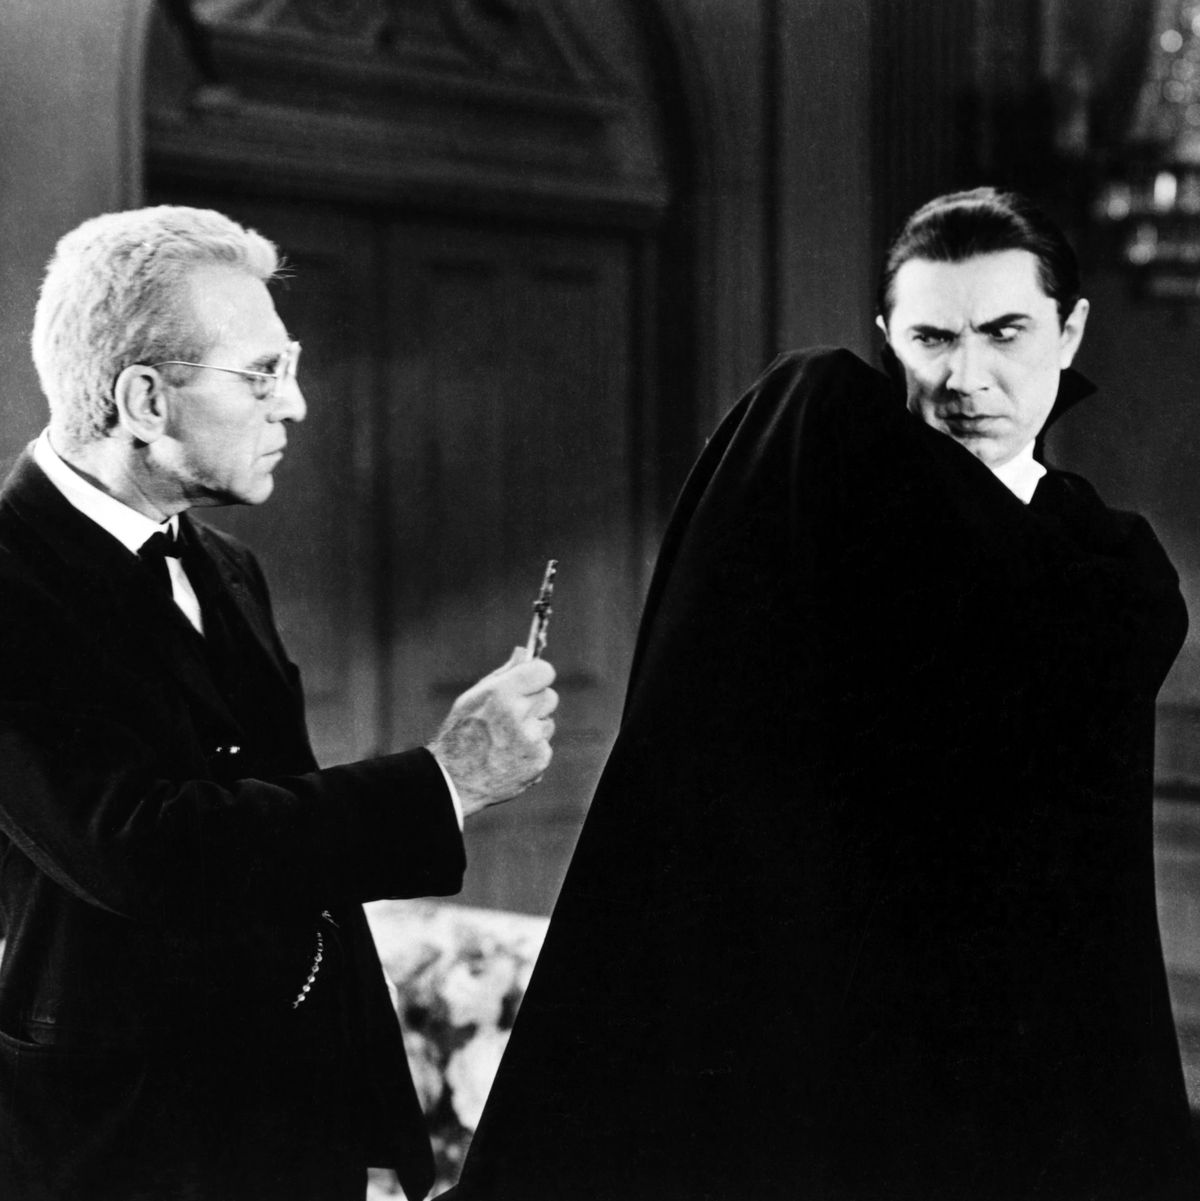 Van Helsing And Dracula